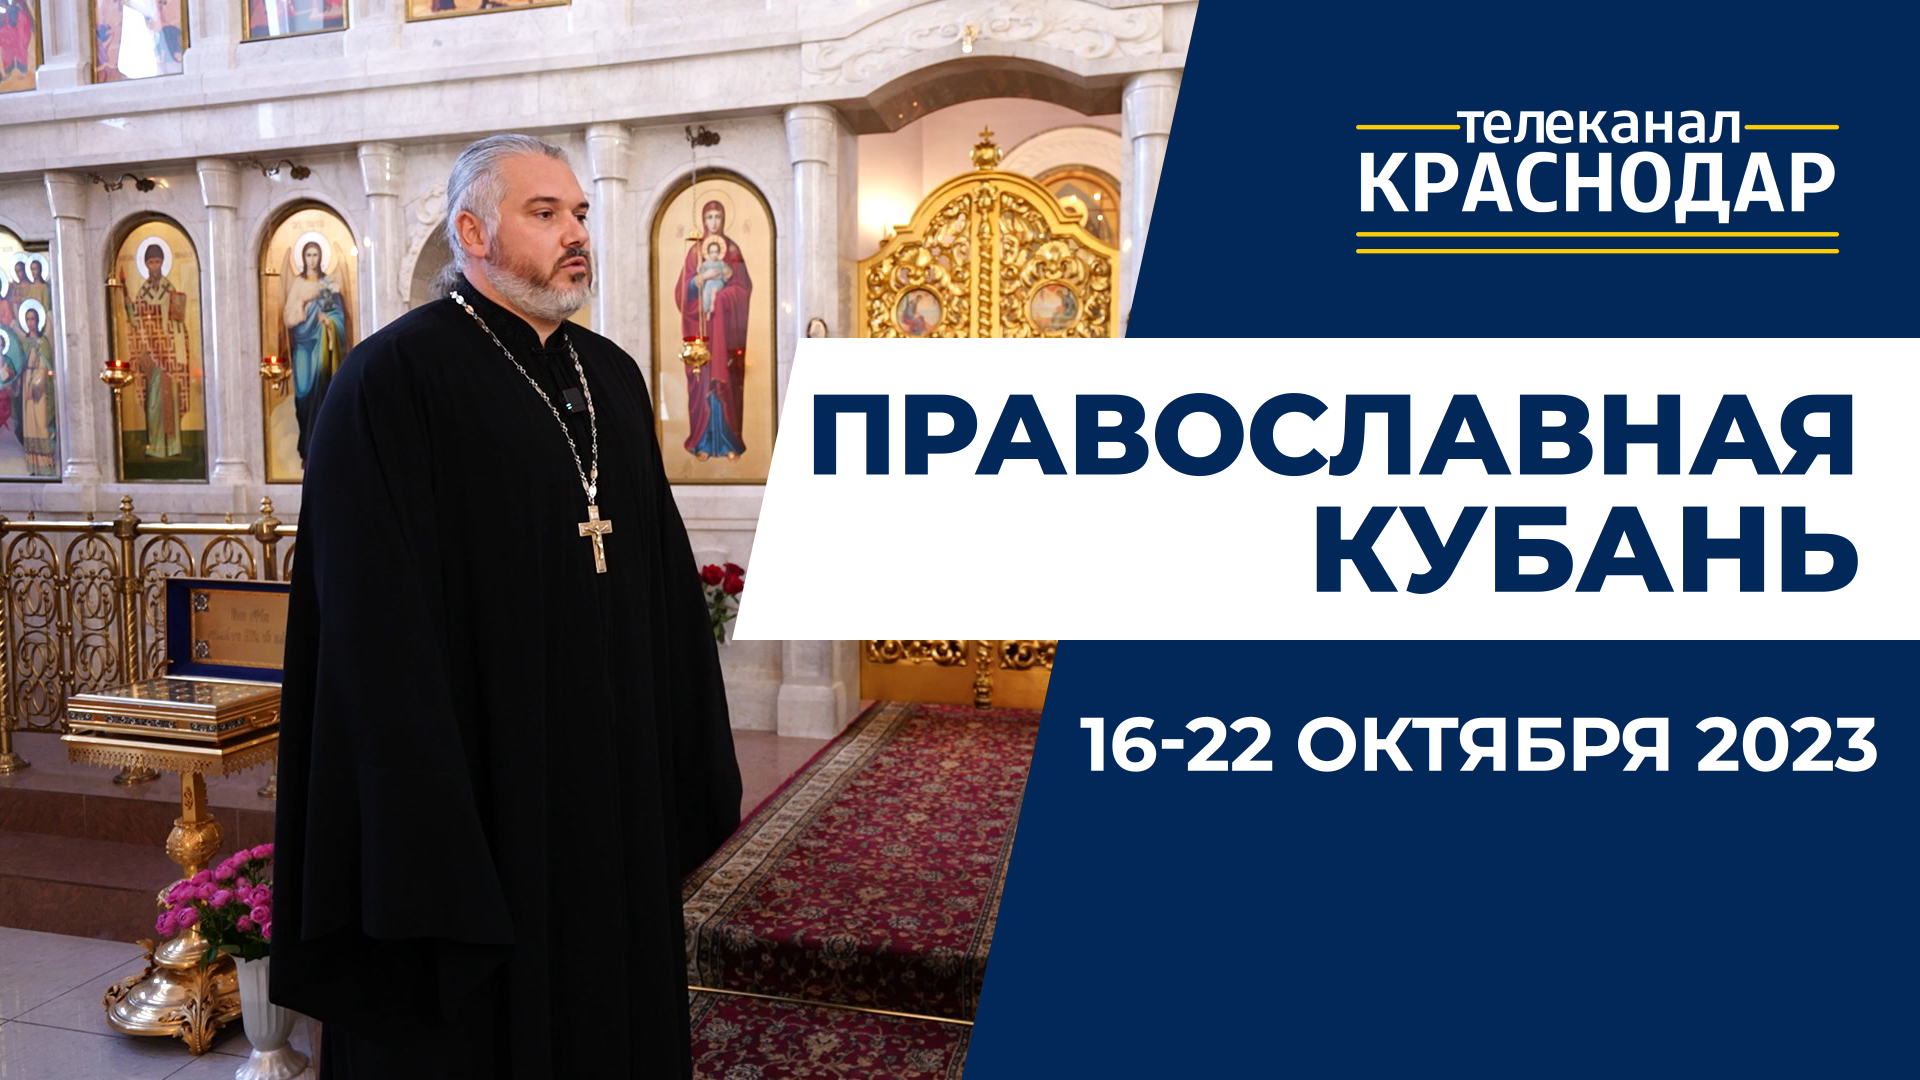 «Православная Кубань»: какие церковные праздники отмечают с 16 по 22 октября?